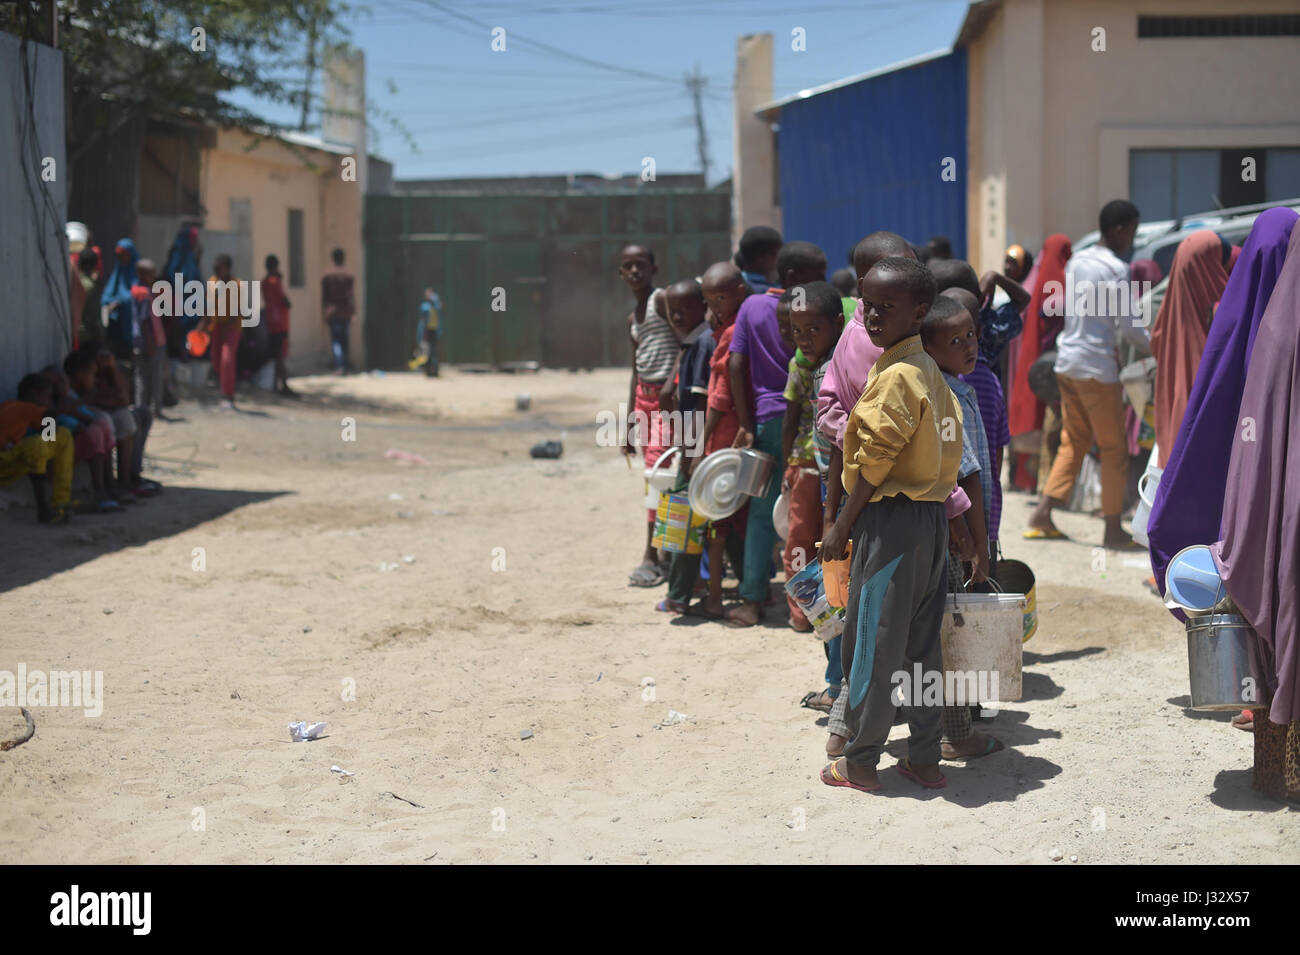 Kinder Line-up an eine Fütterung Centre in Mogadischu, Somalia, am 9. März 2017. Somalia ist derzeit in einer schweren Dürre und möglicherweise am Rande einer Hungersnot, wenn nicht dringende humanitäre bald gehandelt wird. AMISOM Foto/Tobin Jones Stockfoto